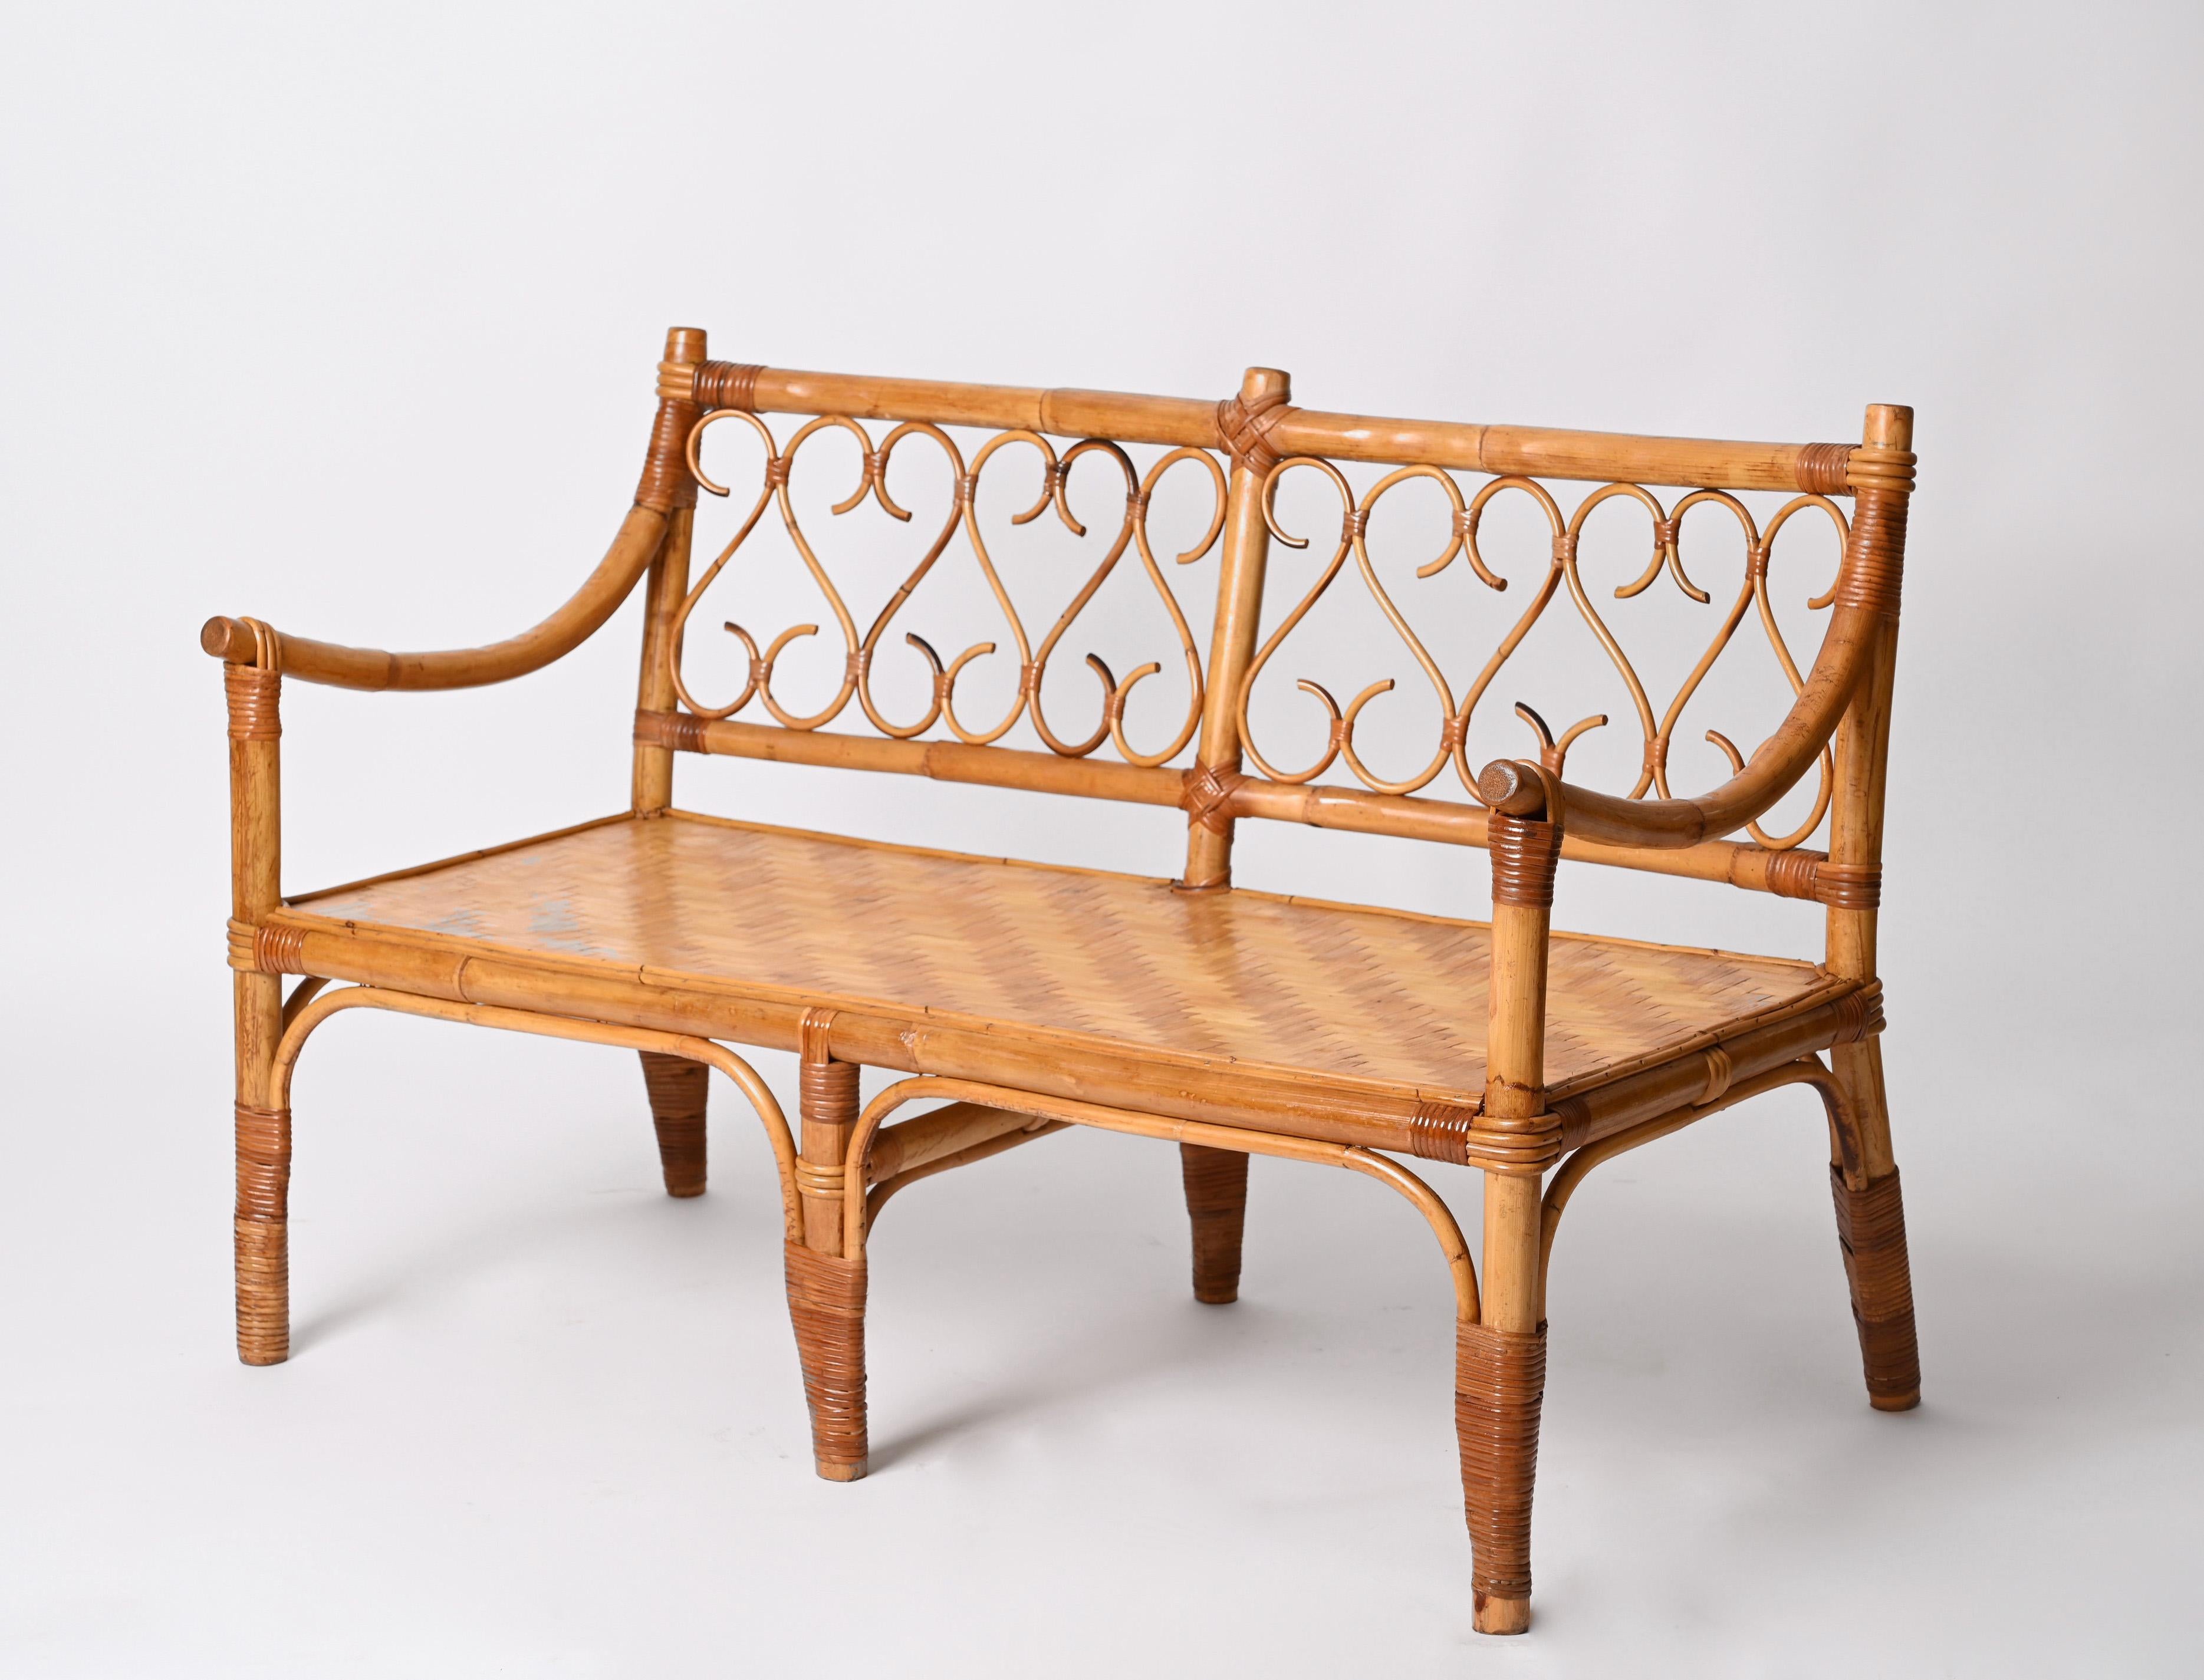 Ikonisches Mid-Century Modern Zweisitzer-Sofa aus Bambus und Rattan. Dieses erstaunliche Stück wurde in den 1970er Jahren in Italien hergestellt. 

Dieses wunderbare handgefertigte Sofa hat eine Struktur aus gebogenem und geflochtenem Rattan und